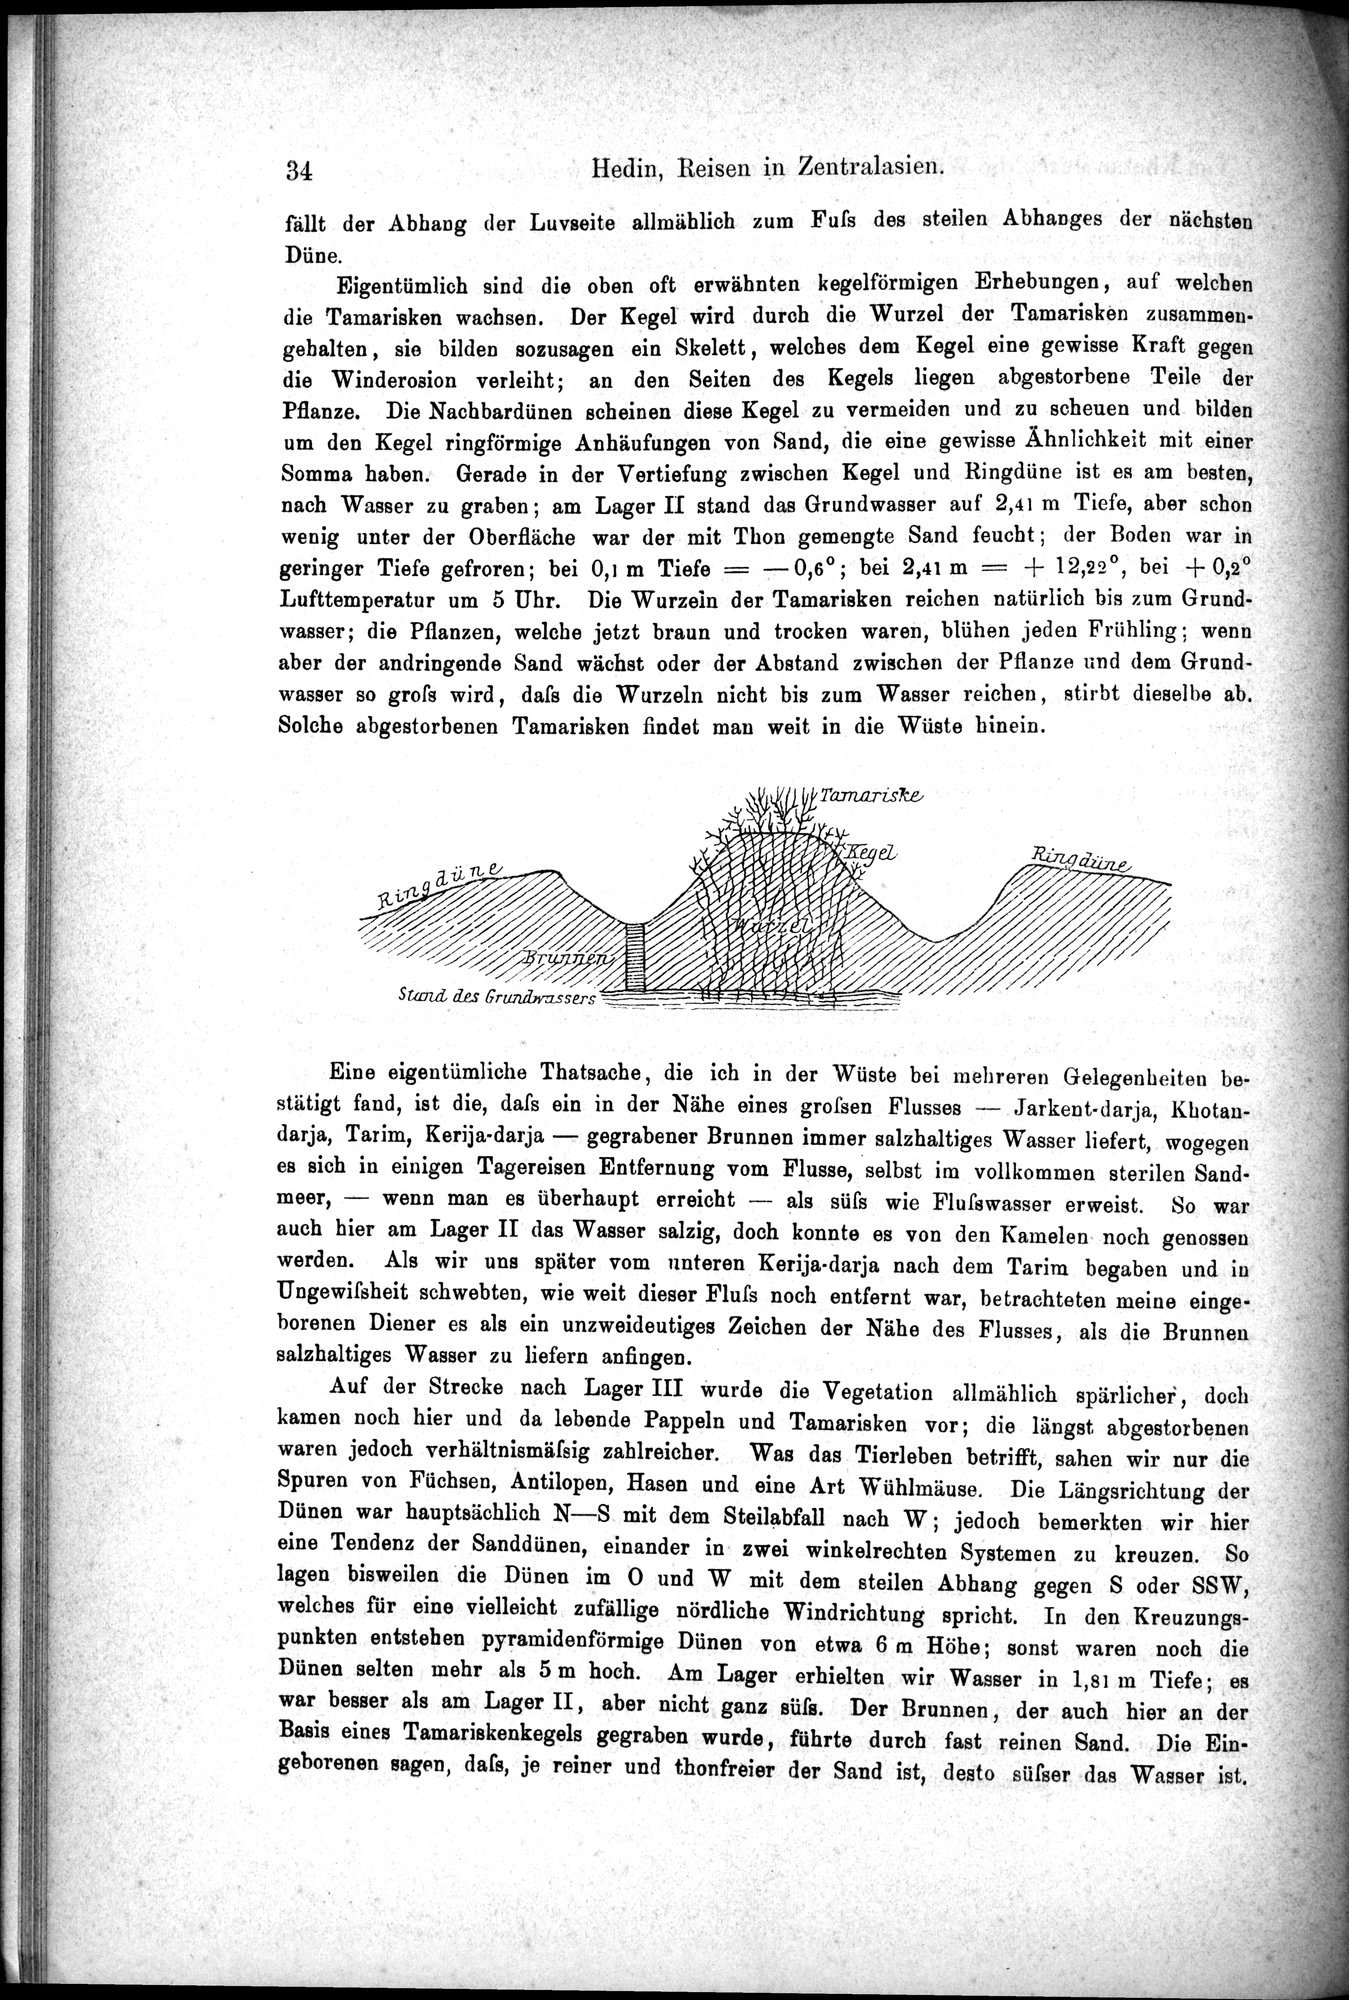 Die Geographische-Wissenschaftlichen Ergebnisse meiner Reisen in Zentralasien, 1894-1897 : vol.1 / Page 46 (Grayscale High Resolution Image)